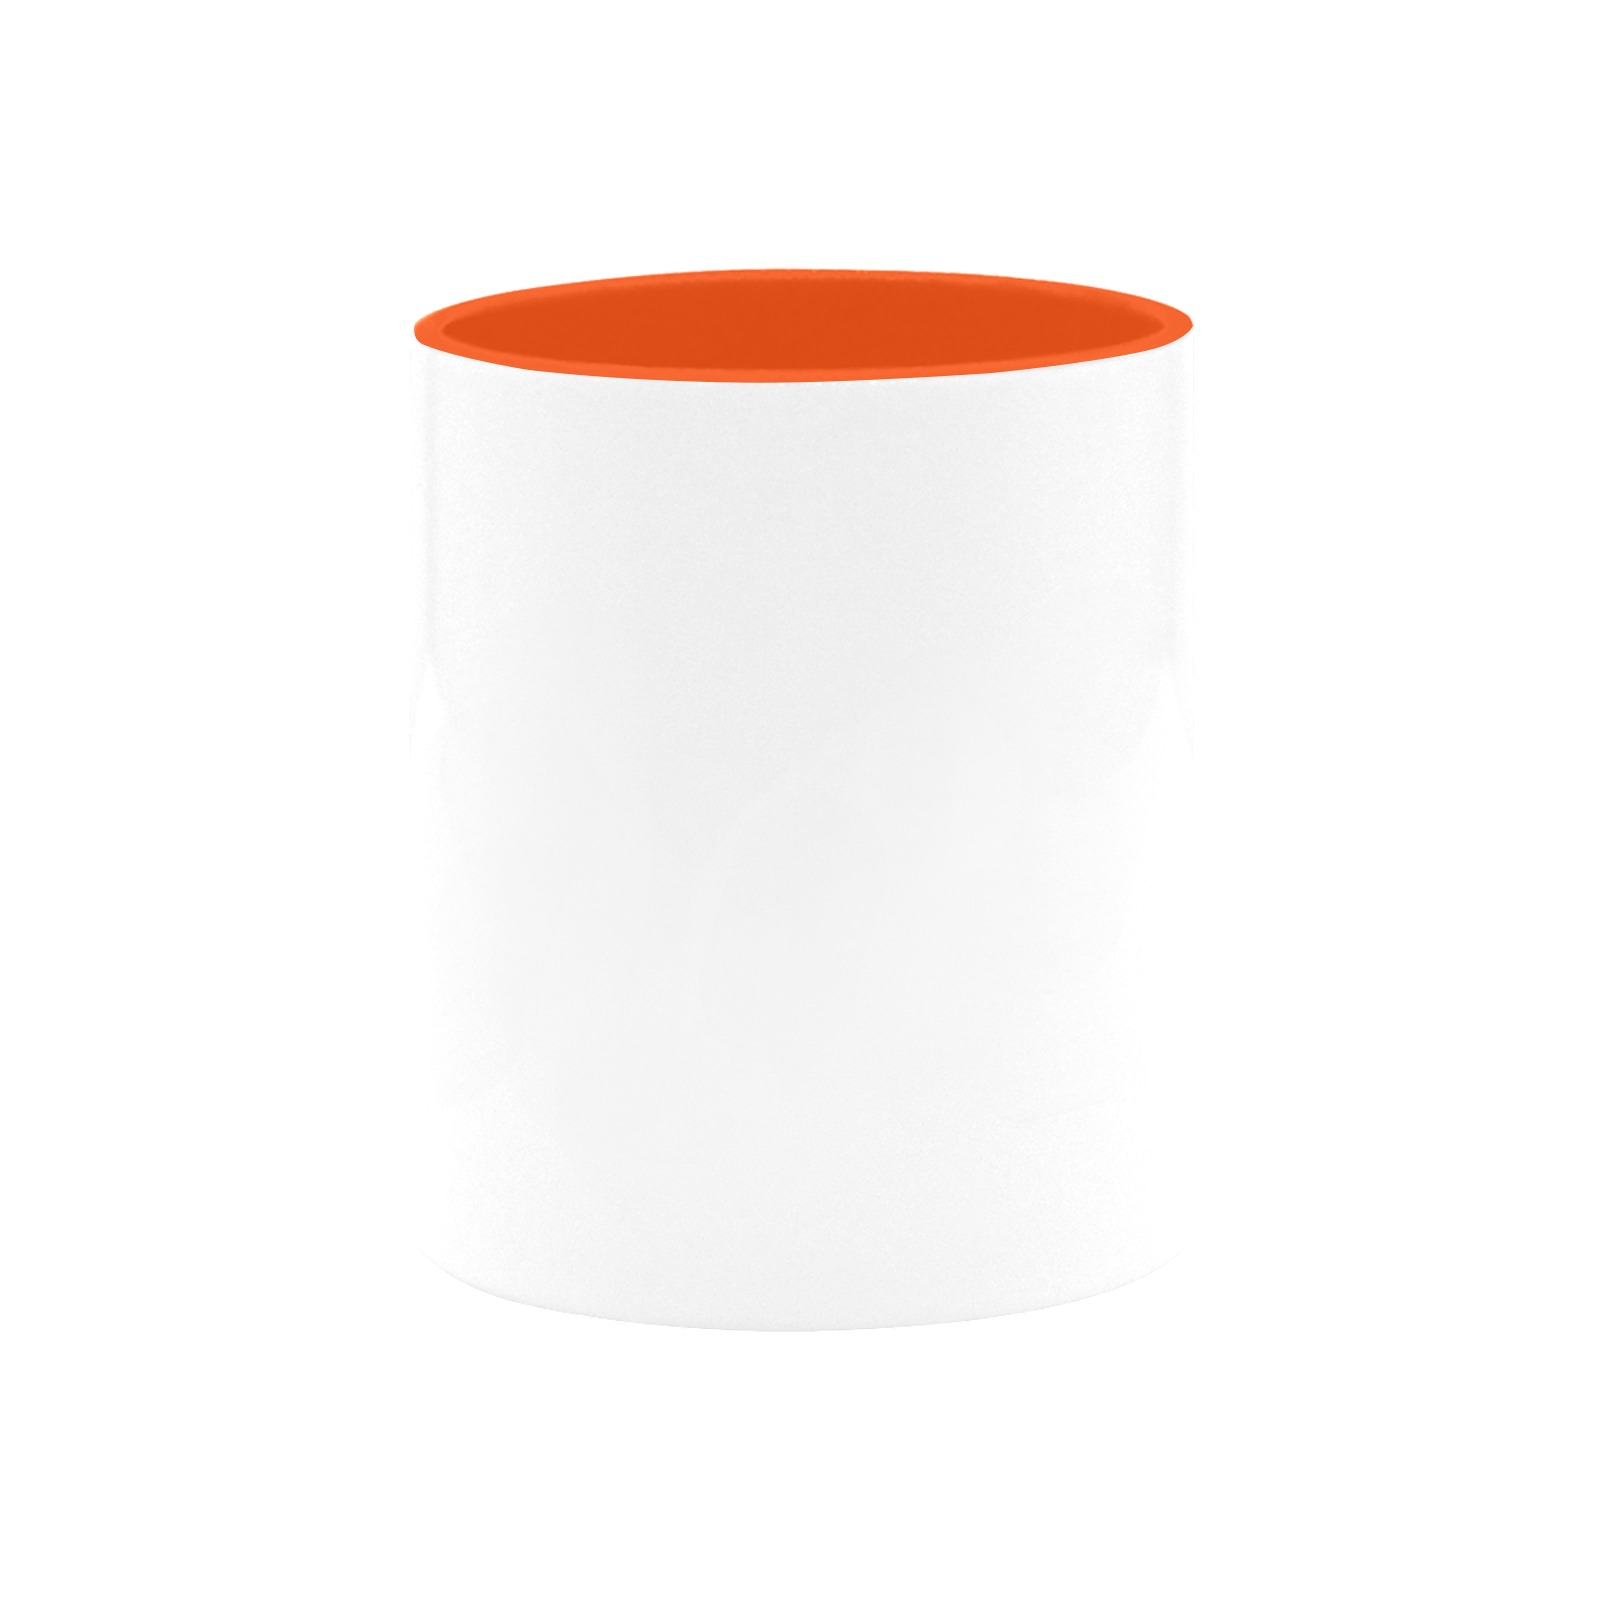 Custom Inner Color Mug (11oz)